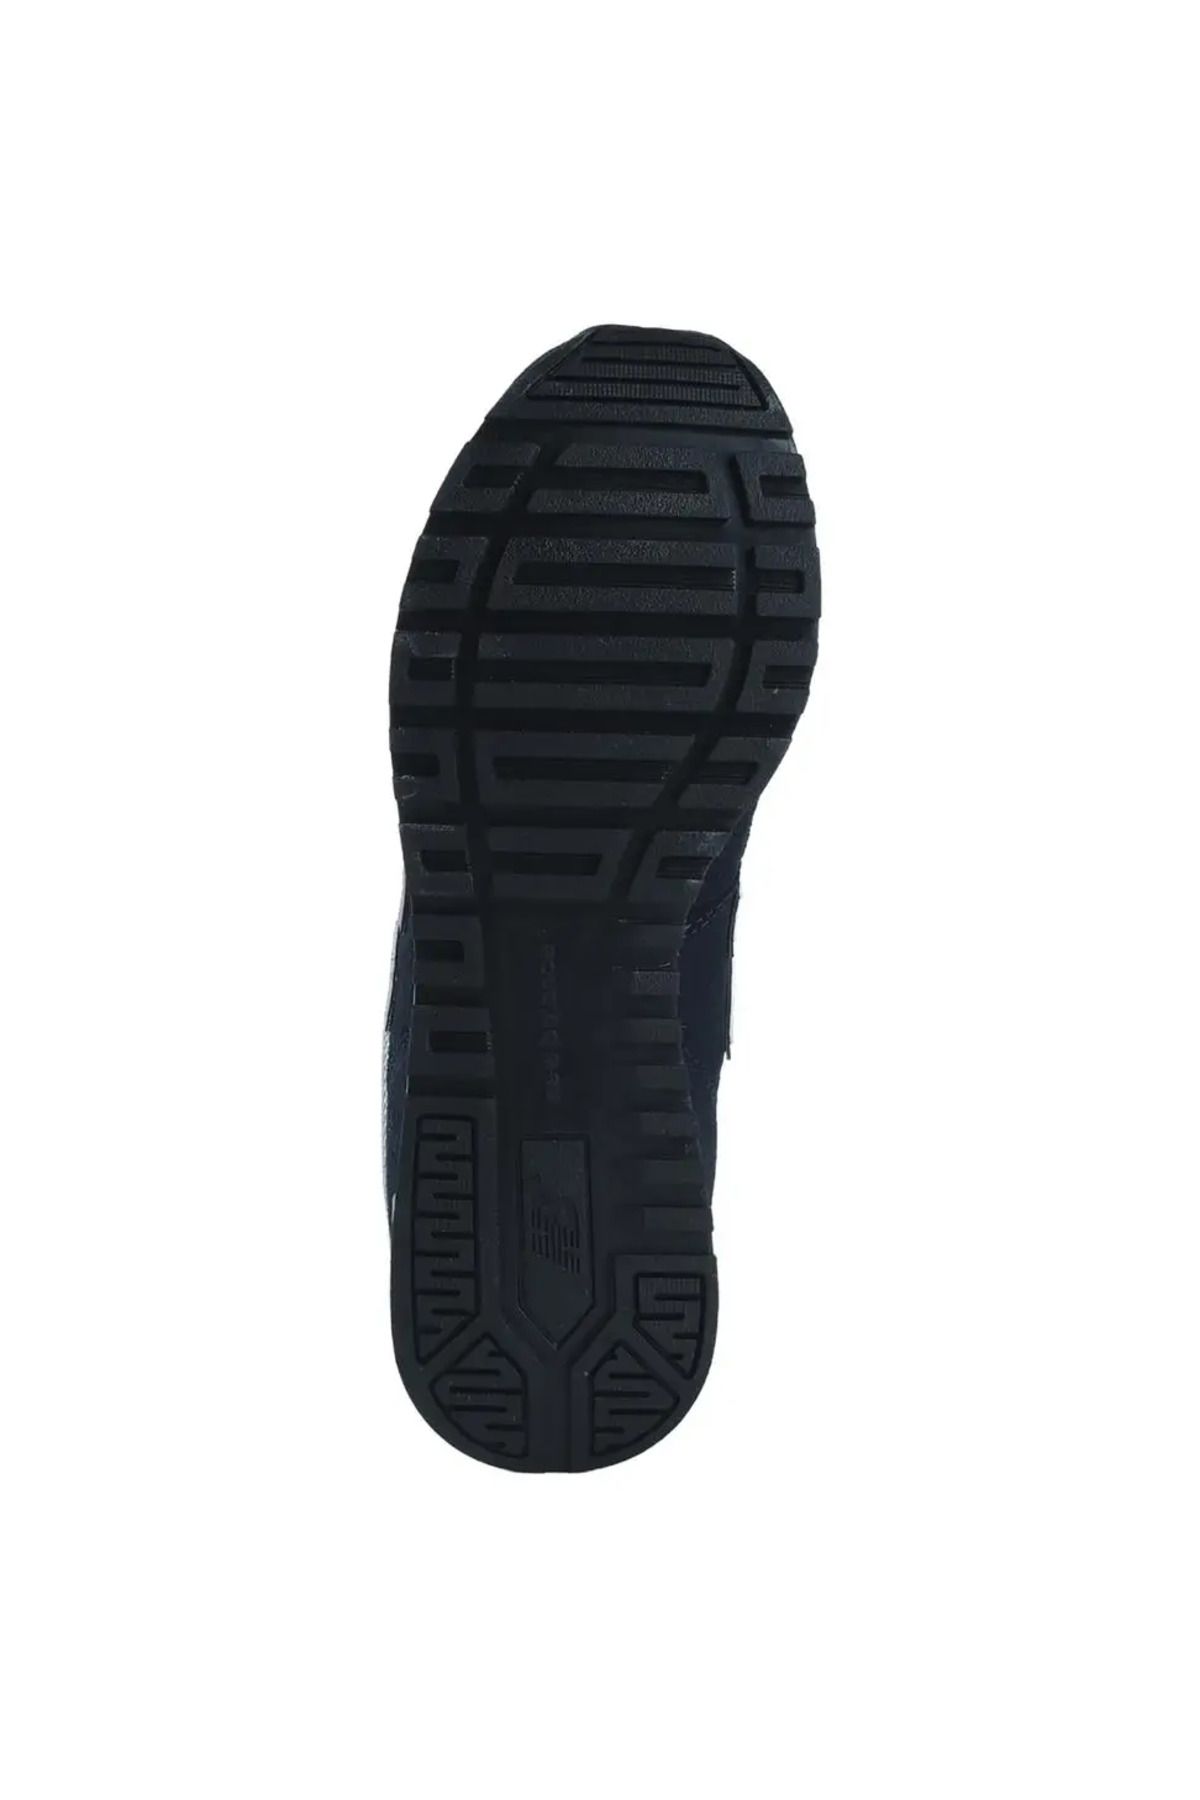 New Balance 565 Lifestyle Erkek Günlük Ayakkabı - ML565GNA